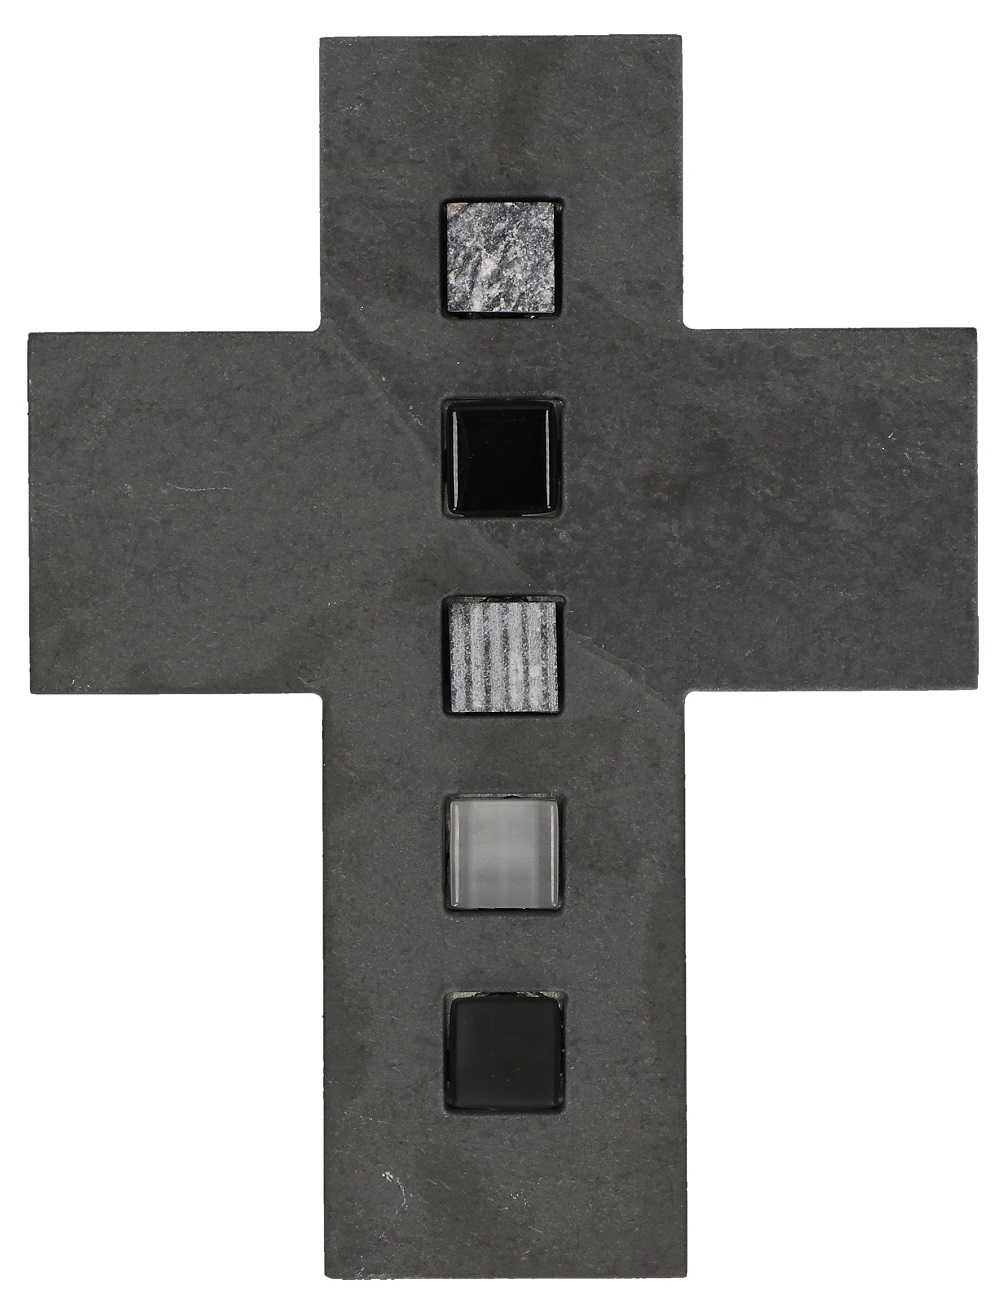 Schmuckkreuz 17 cm: Schiefer mit Inlays aus Mosaiksteinen